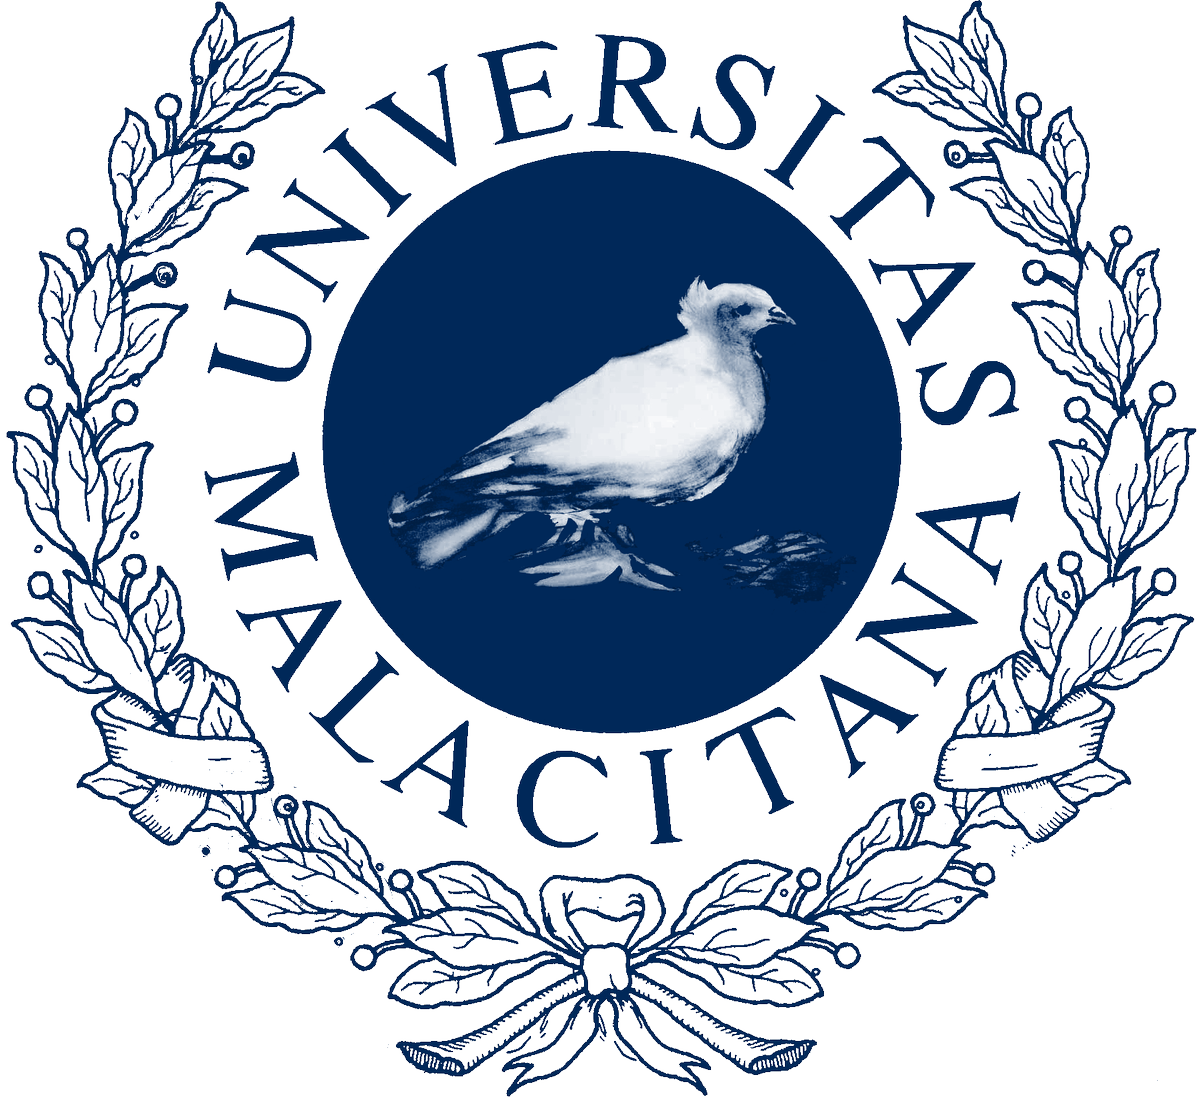 Logo de la Universidad de Málaga